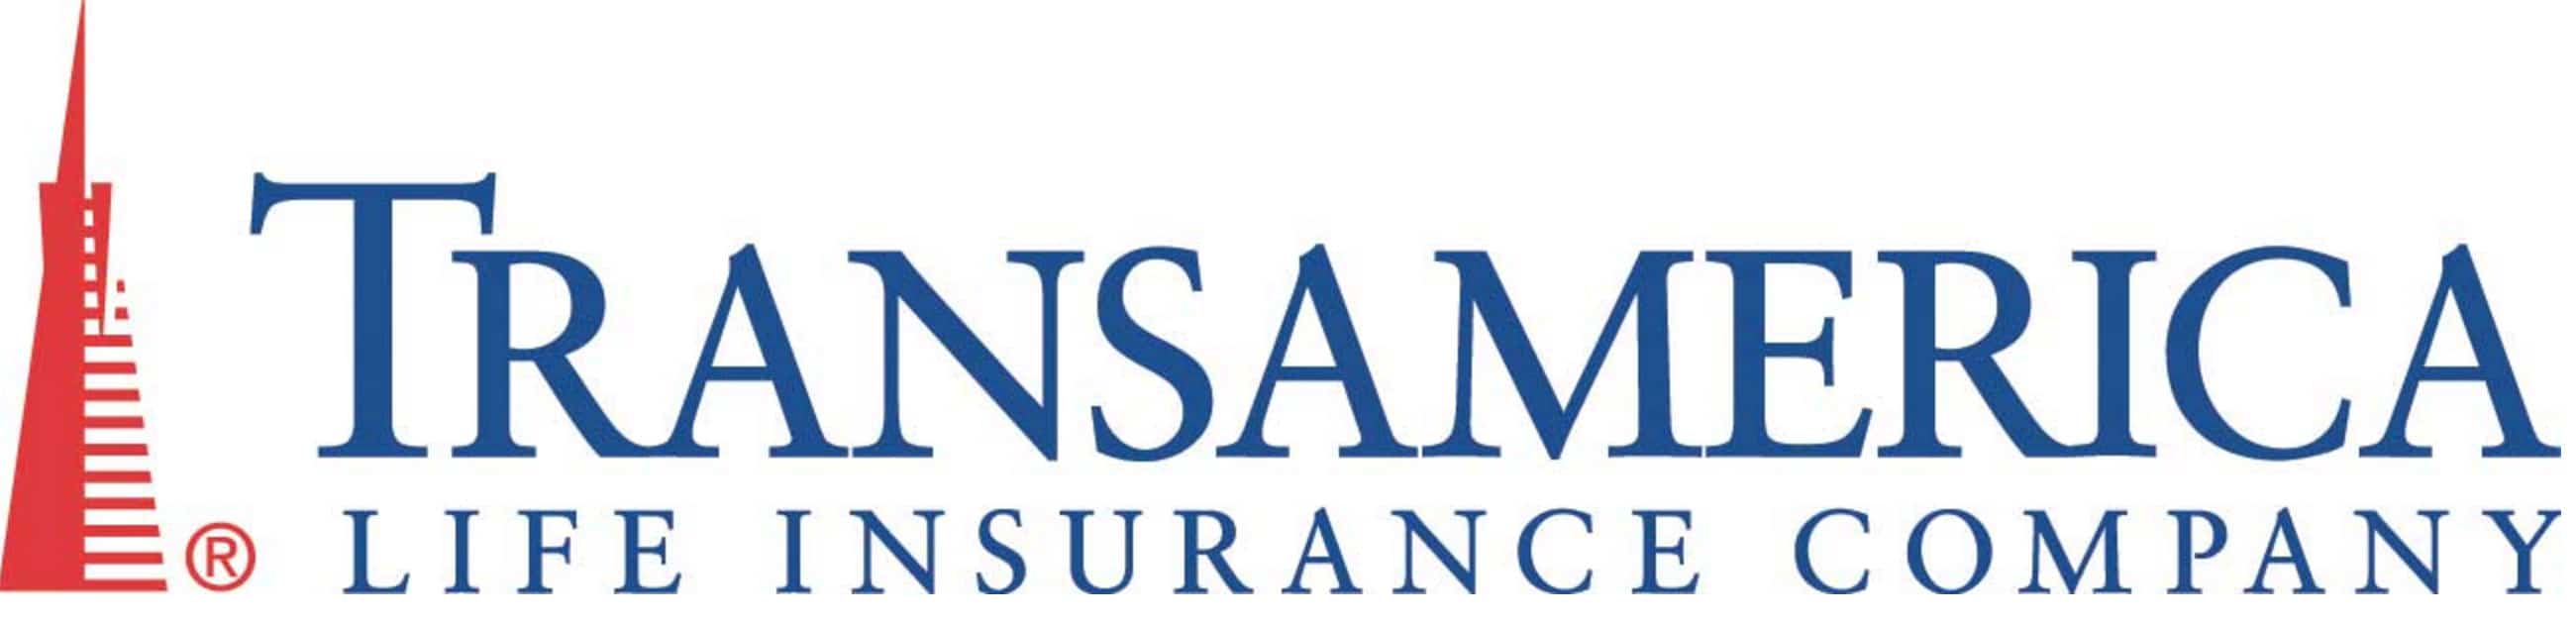 transamerica life insurance reviews